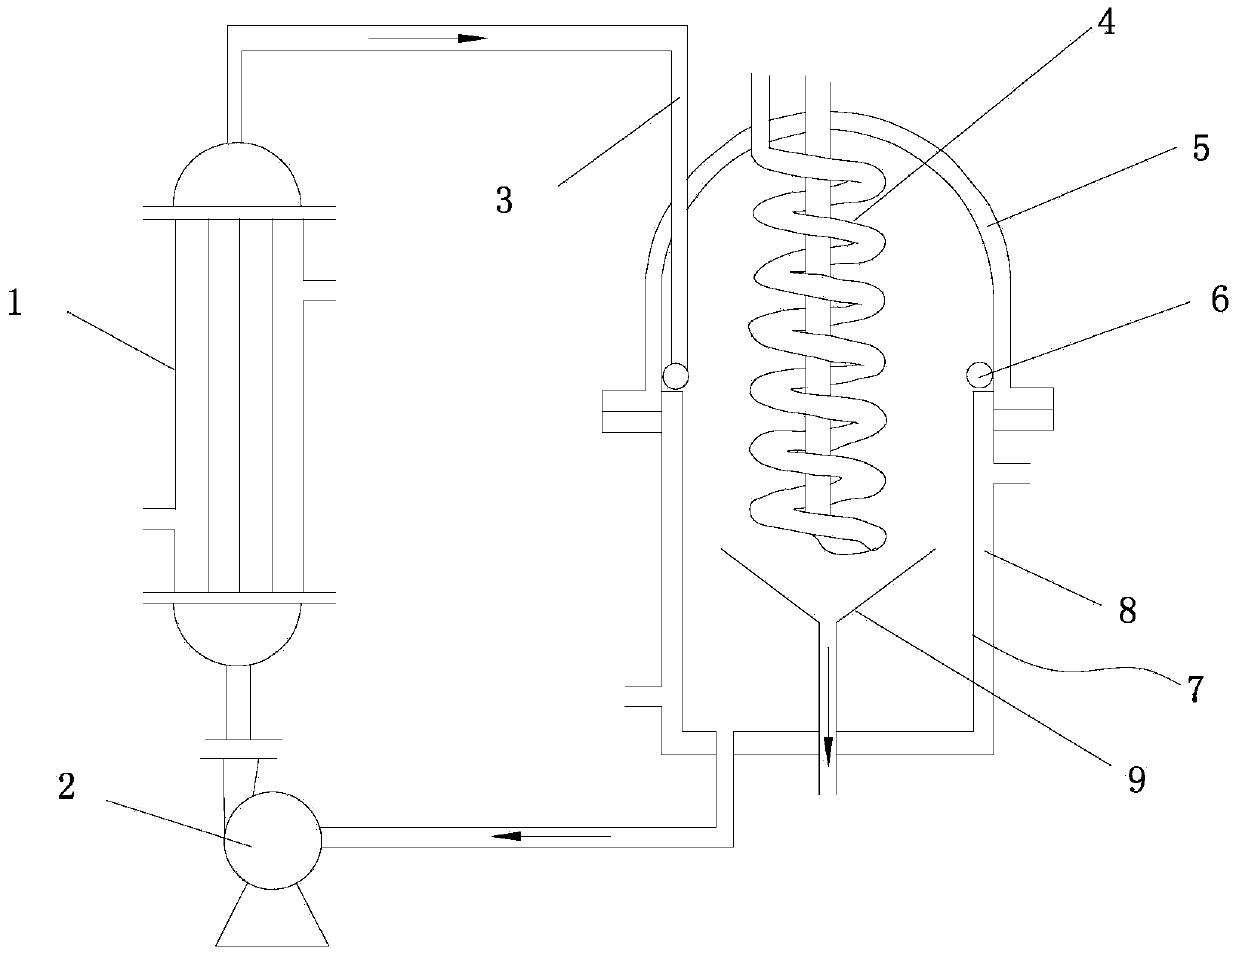 Sub-boiling distillation method for high-purity hydrochloric acid